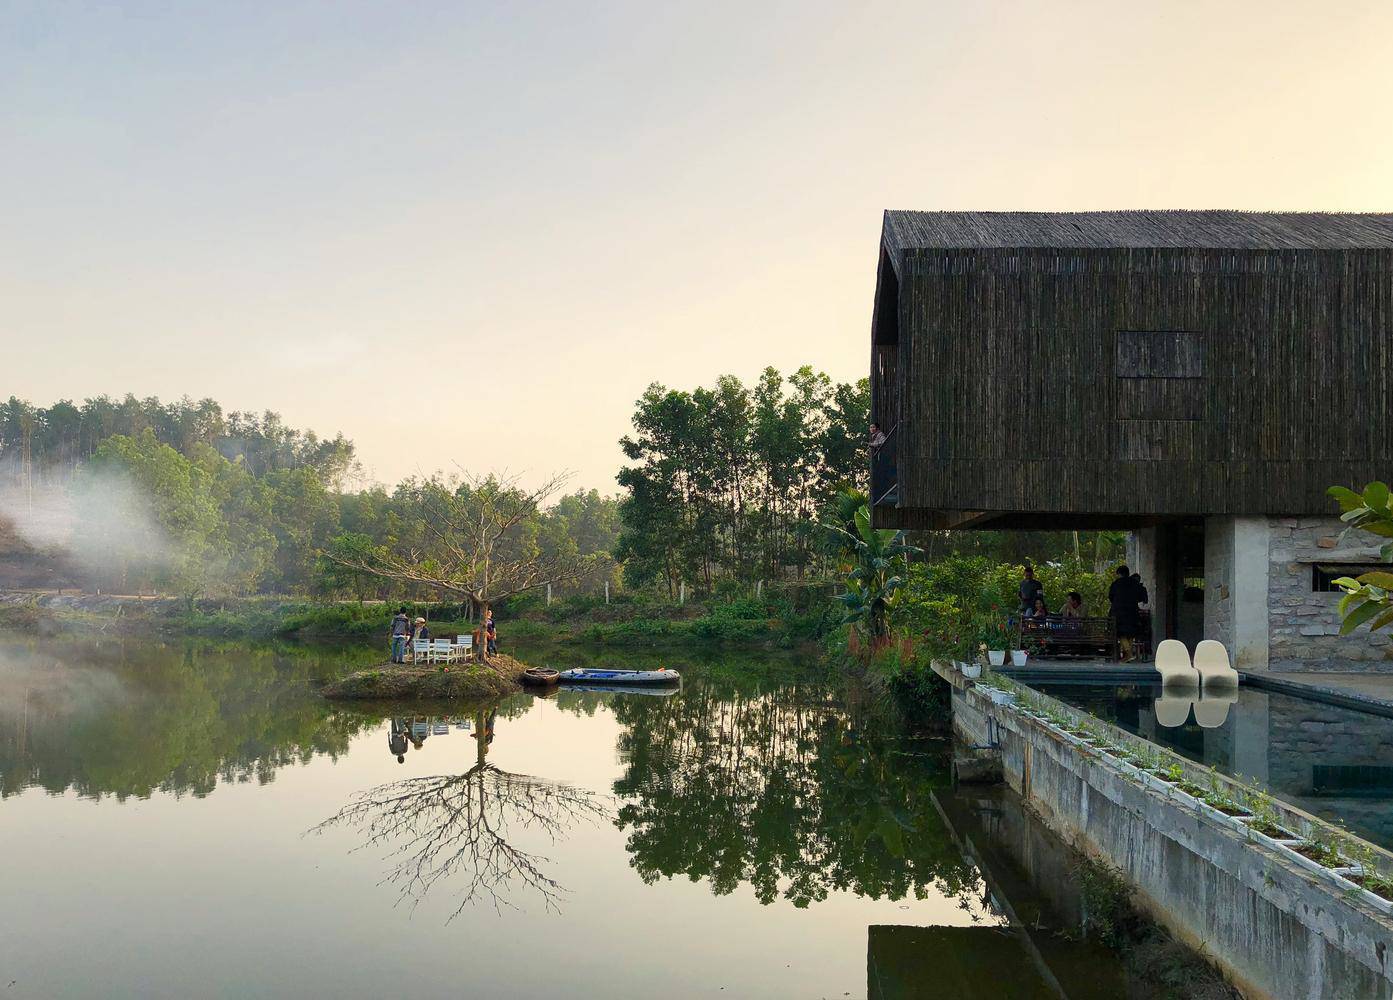 Không có điều hòa, nhà bên hồ ở Đà Nẵng vẫn mát mẻ nhờ lớp vỏ bằng tre - 10 - kythuatcanhtac.com